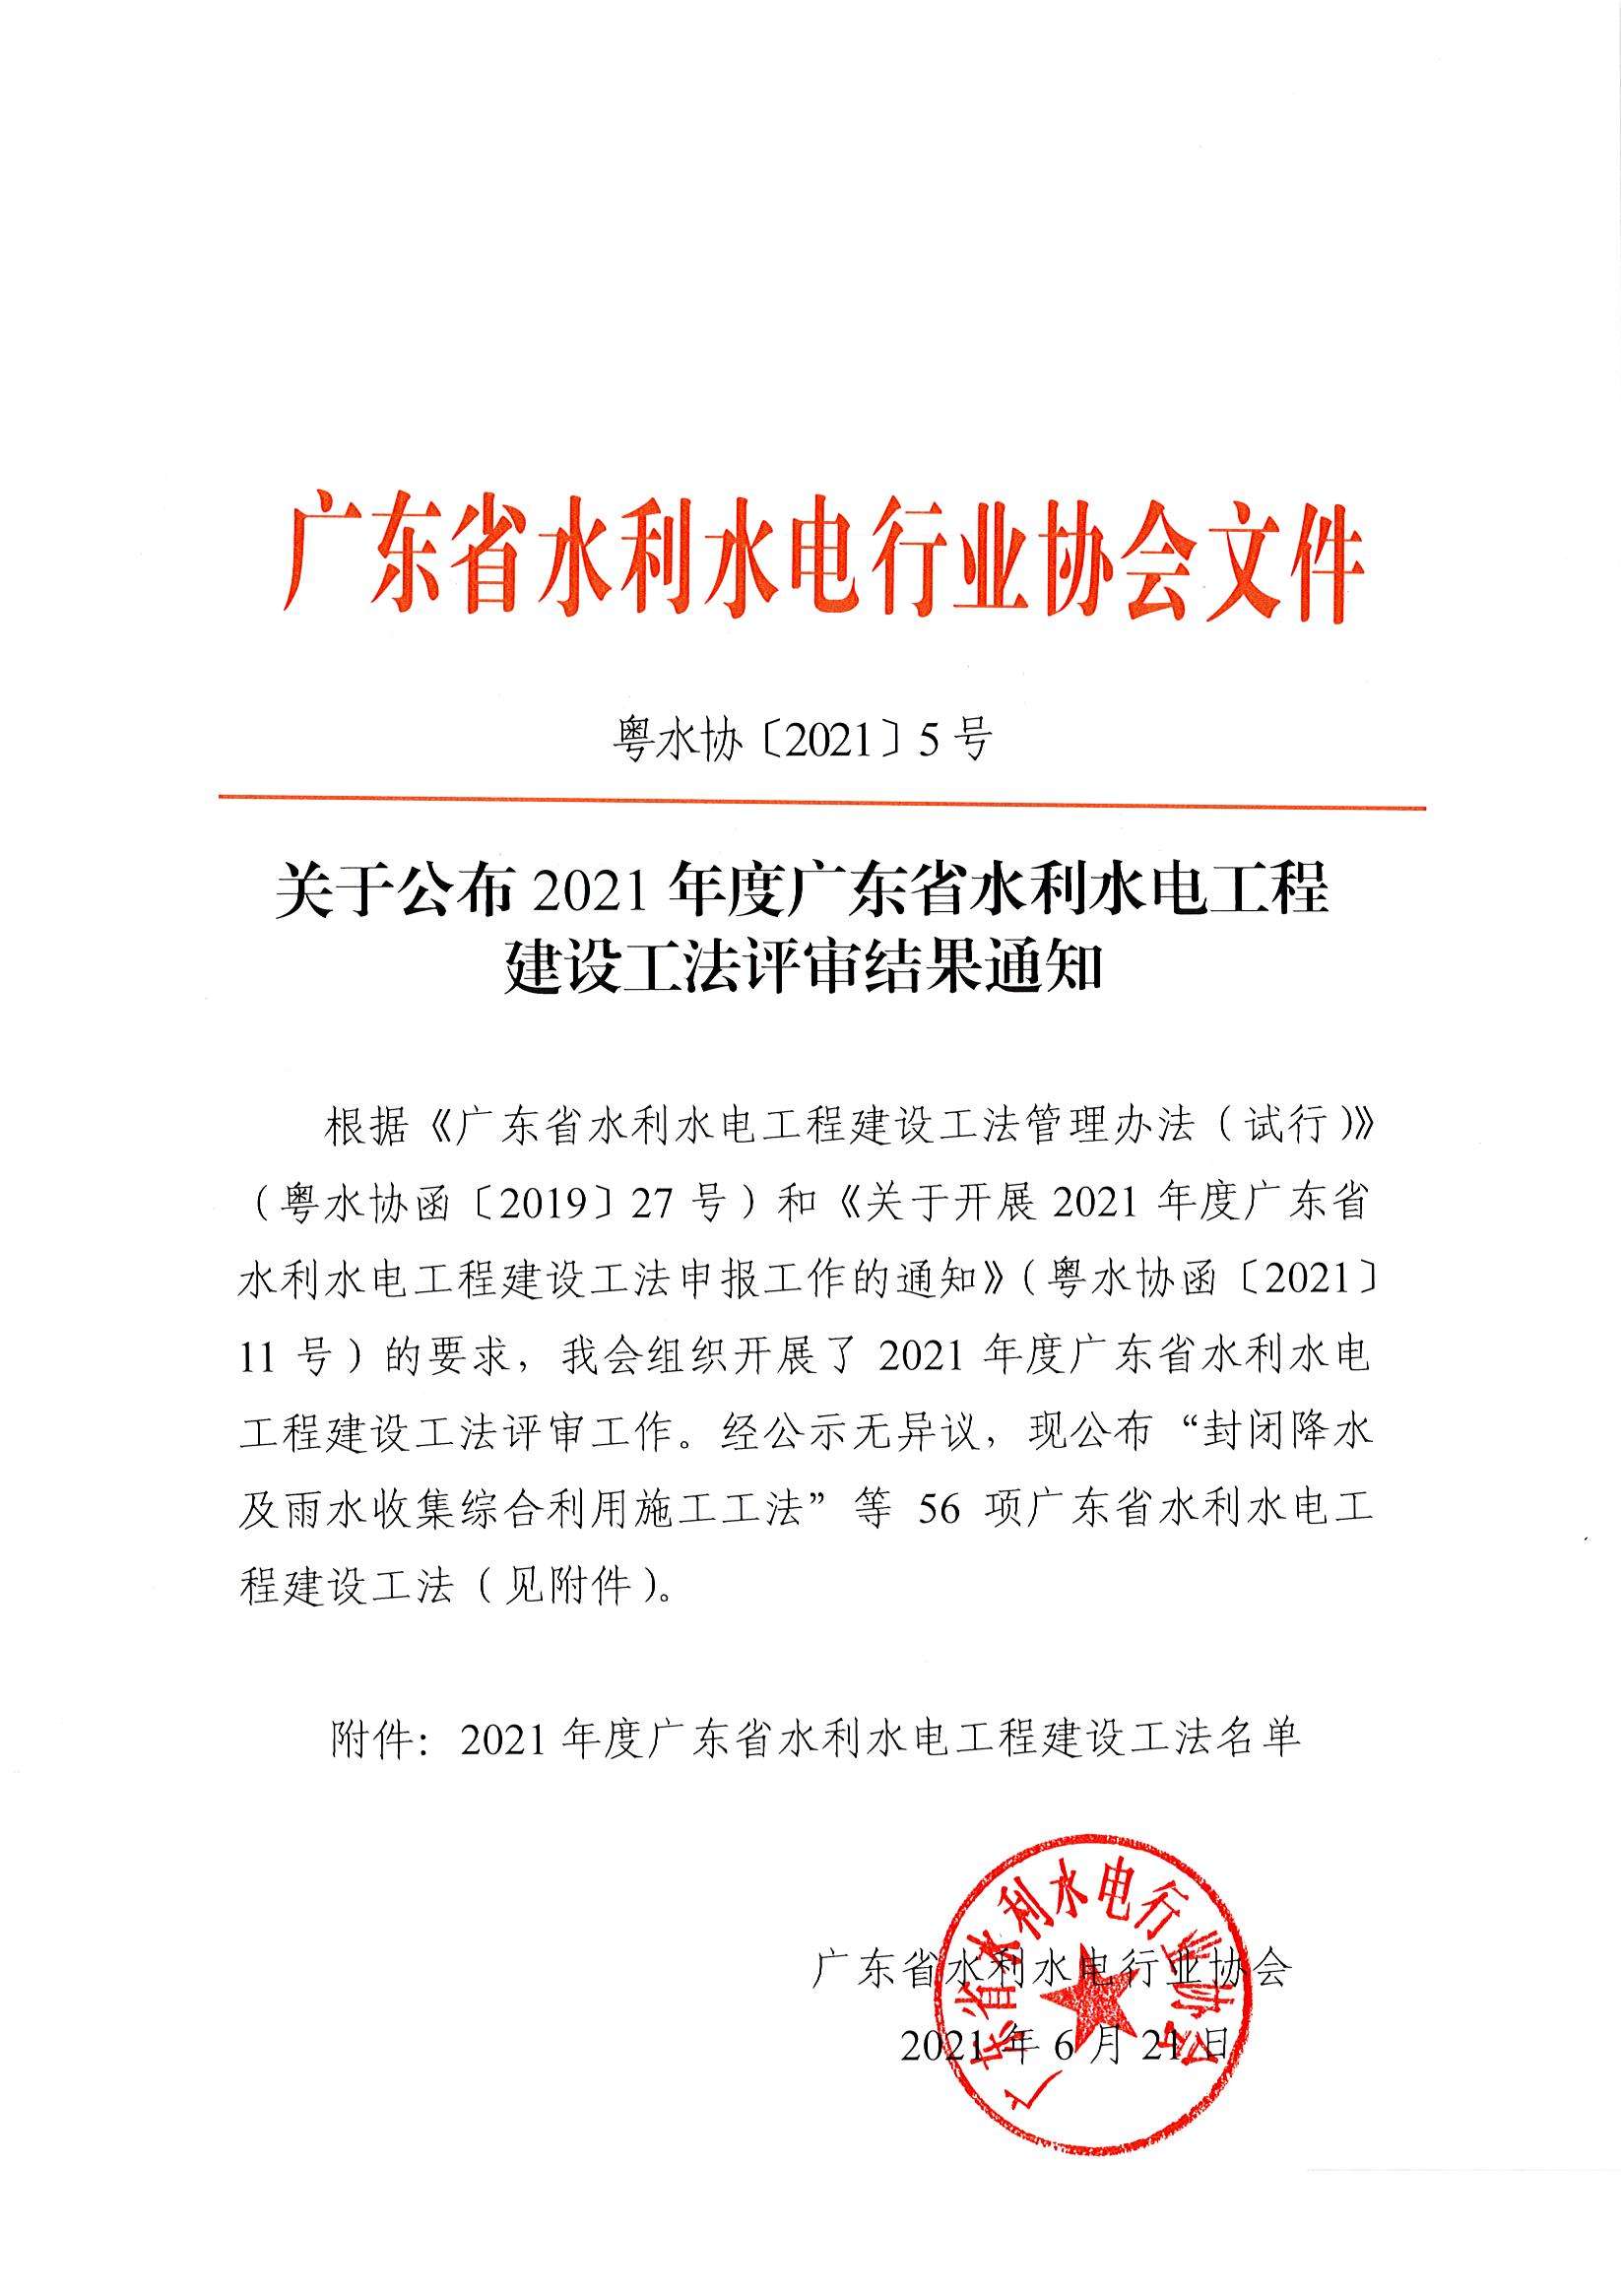  关于公布2021年度广东省水利水电工程建设工法评审结果通知